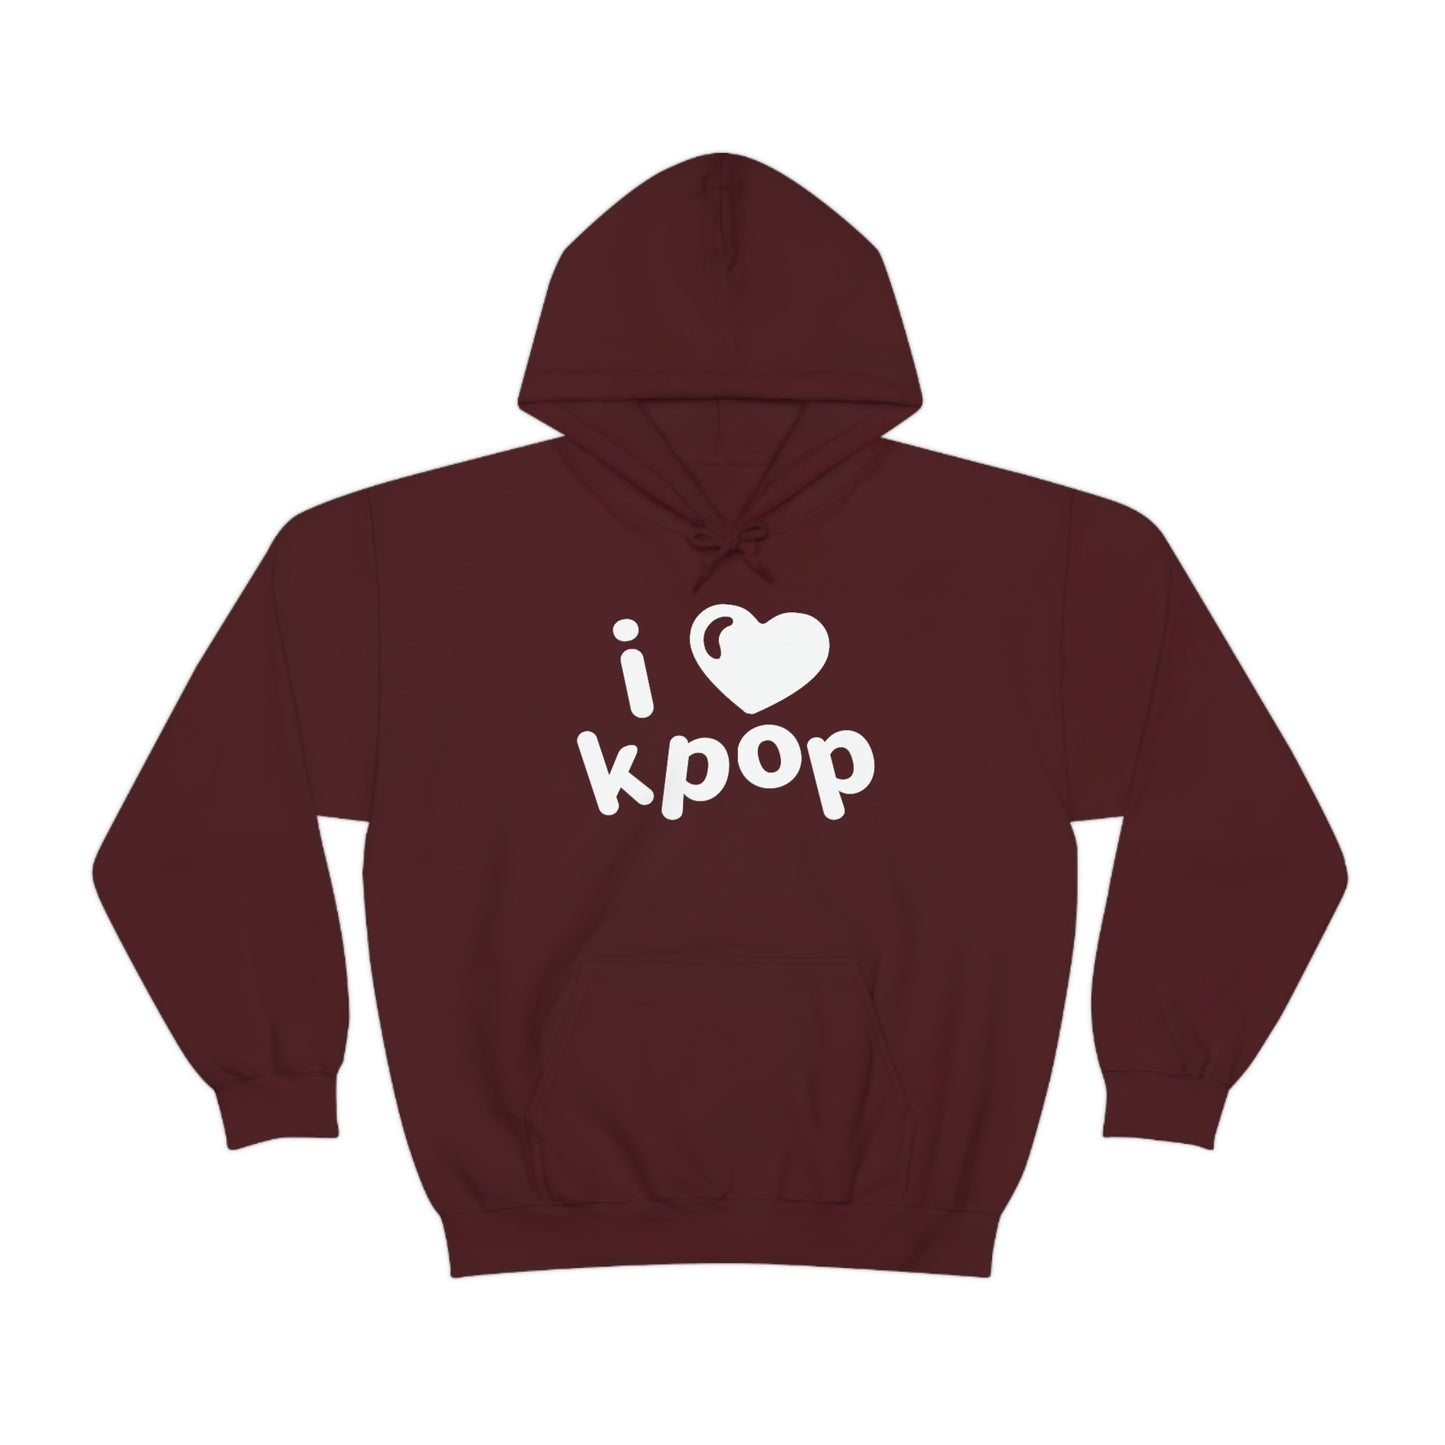 I love kpop hoodie kdrama K-pop cute kawaii hoodies